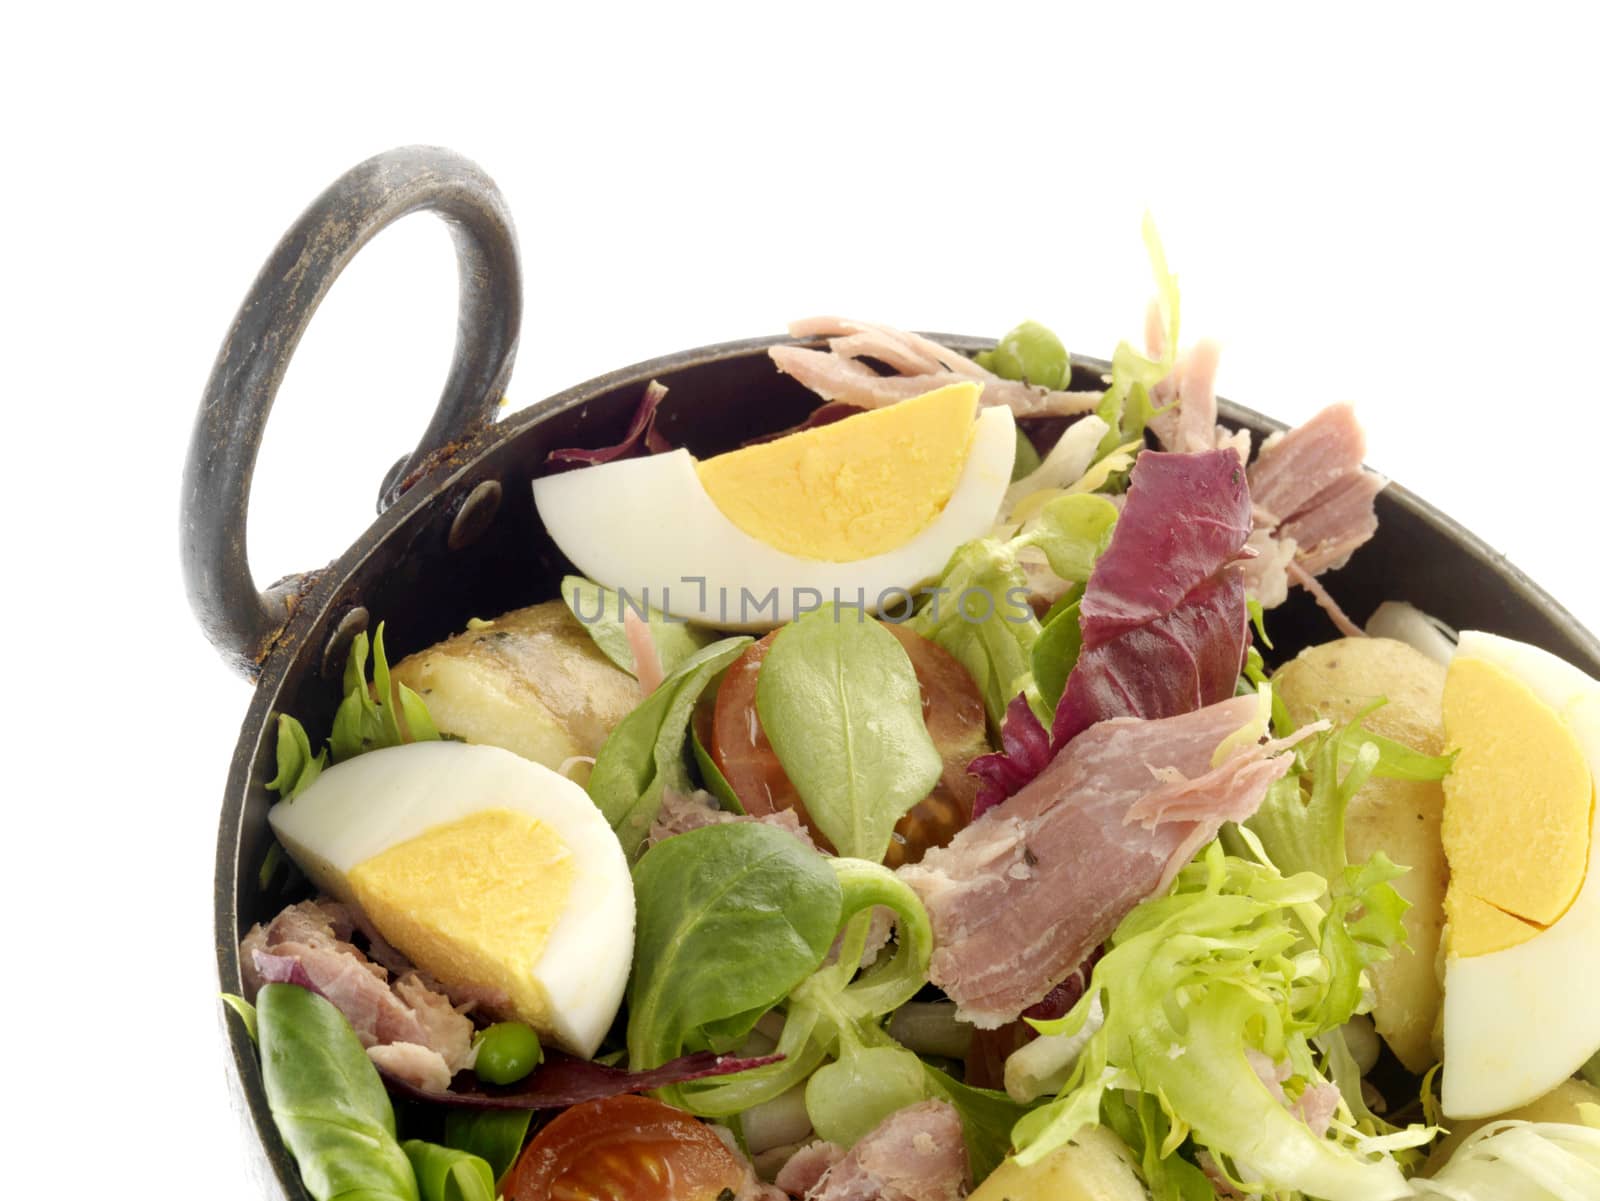 Tuna Salad by Whiteboxmedia